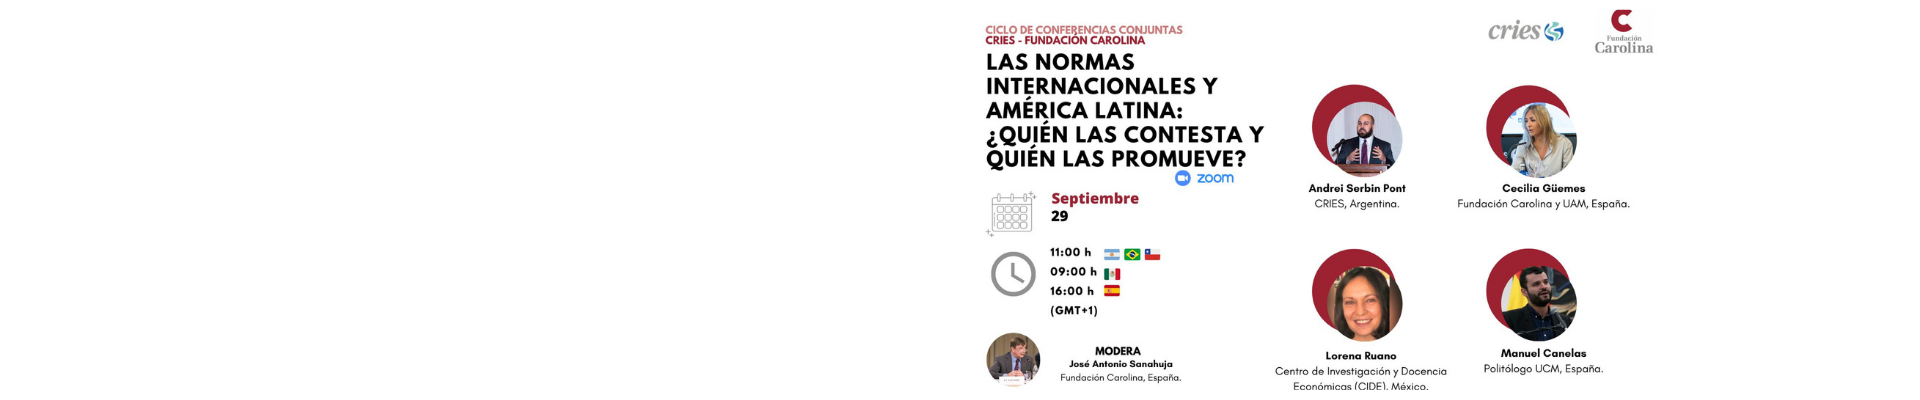 Ciclo de conferencias conjuntas (Fundación Carolina – CRIES): «Las normas internacionales y América Latina: ¿quién las contesta y quién las promueve?»